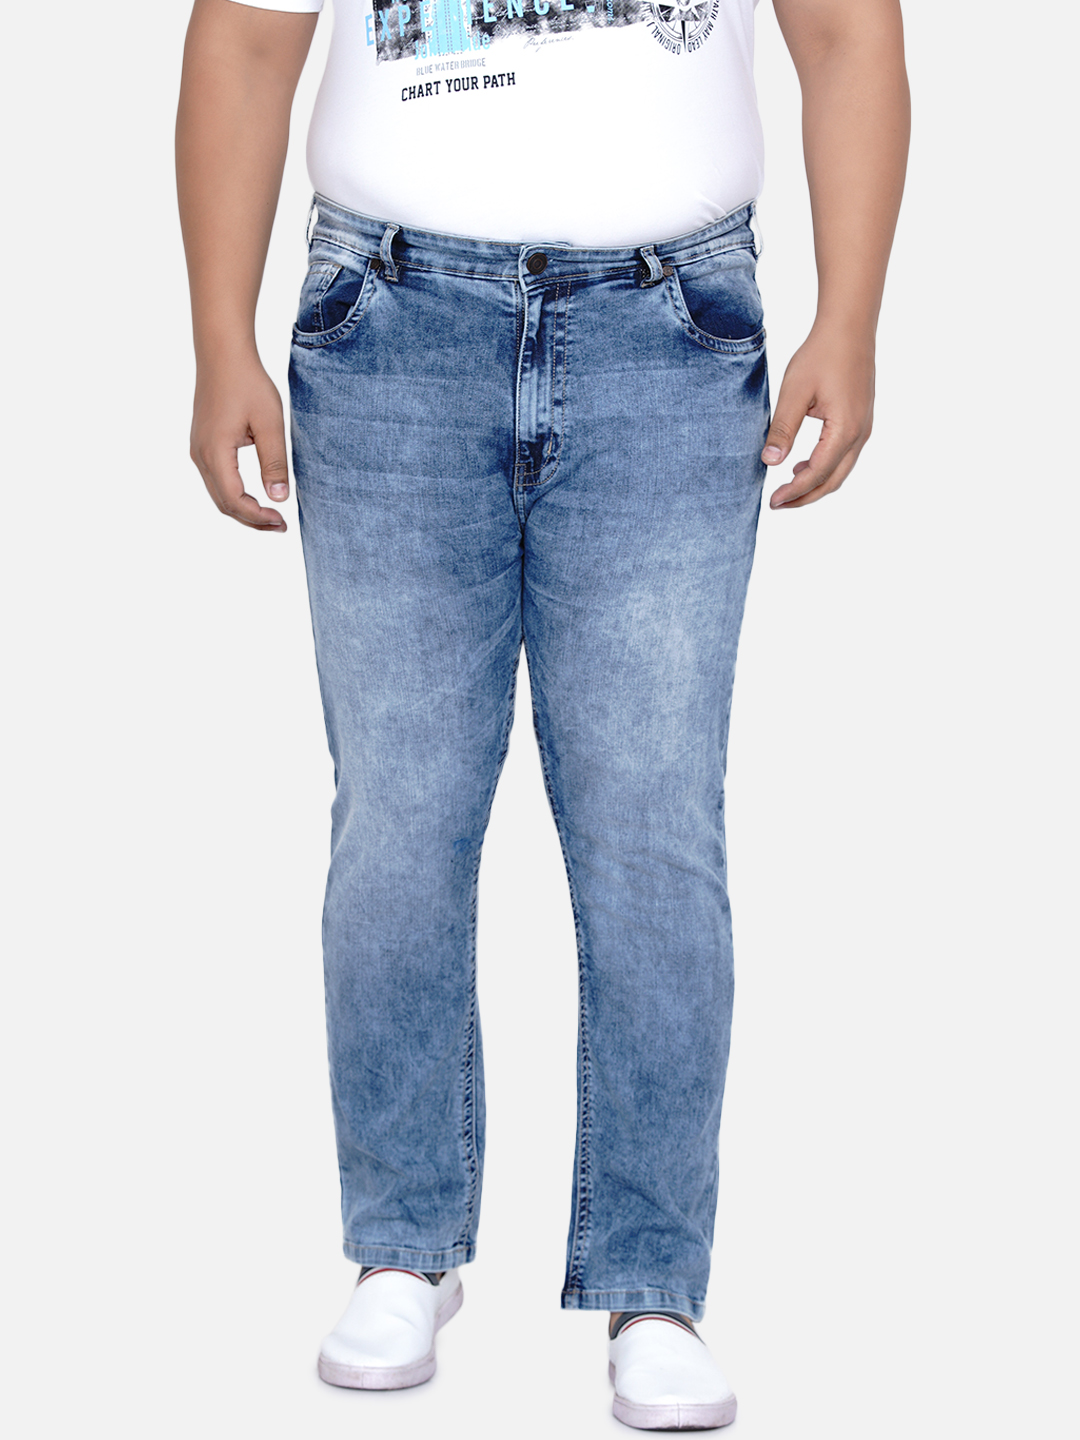 bottomwear/jeans/JPJ12181/jpj12181-3.jpg